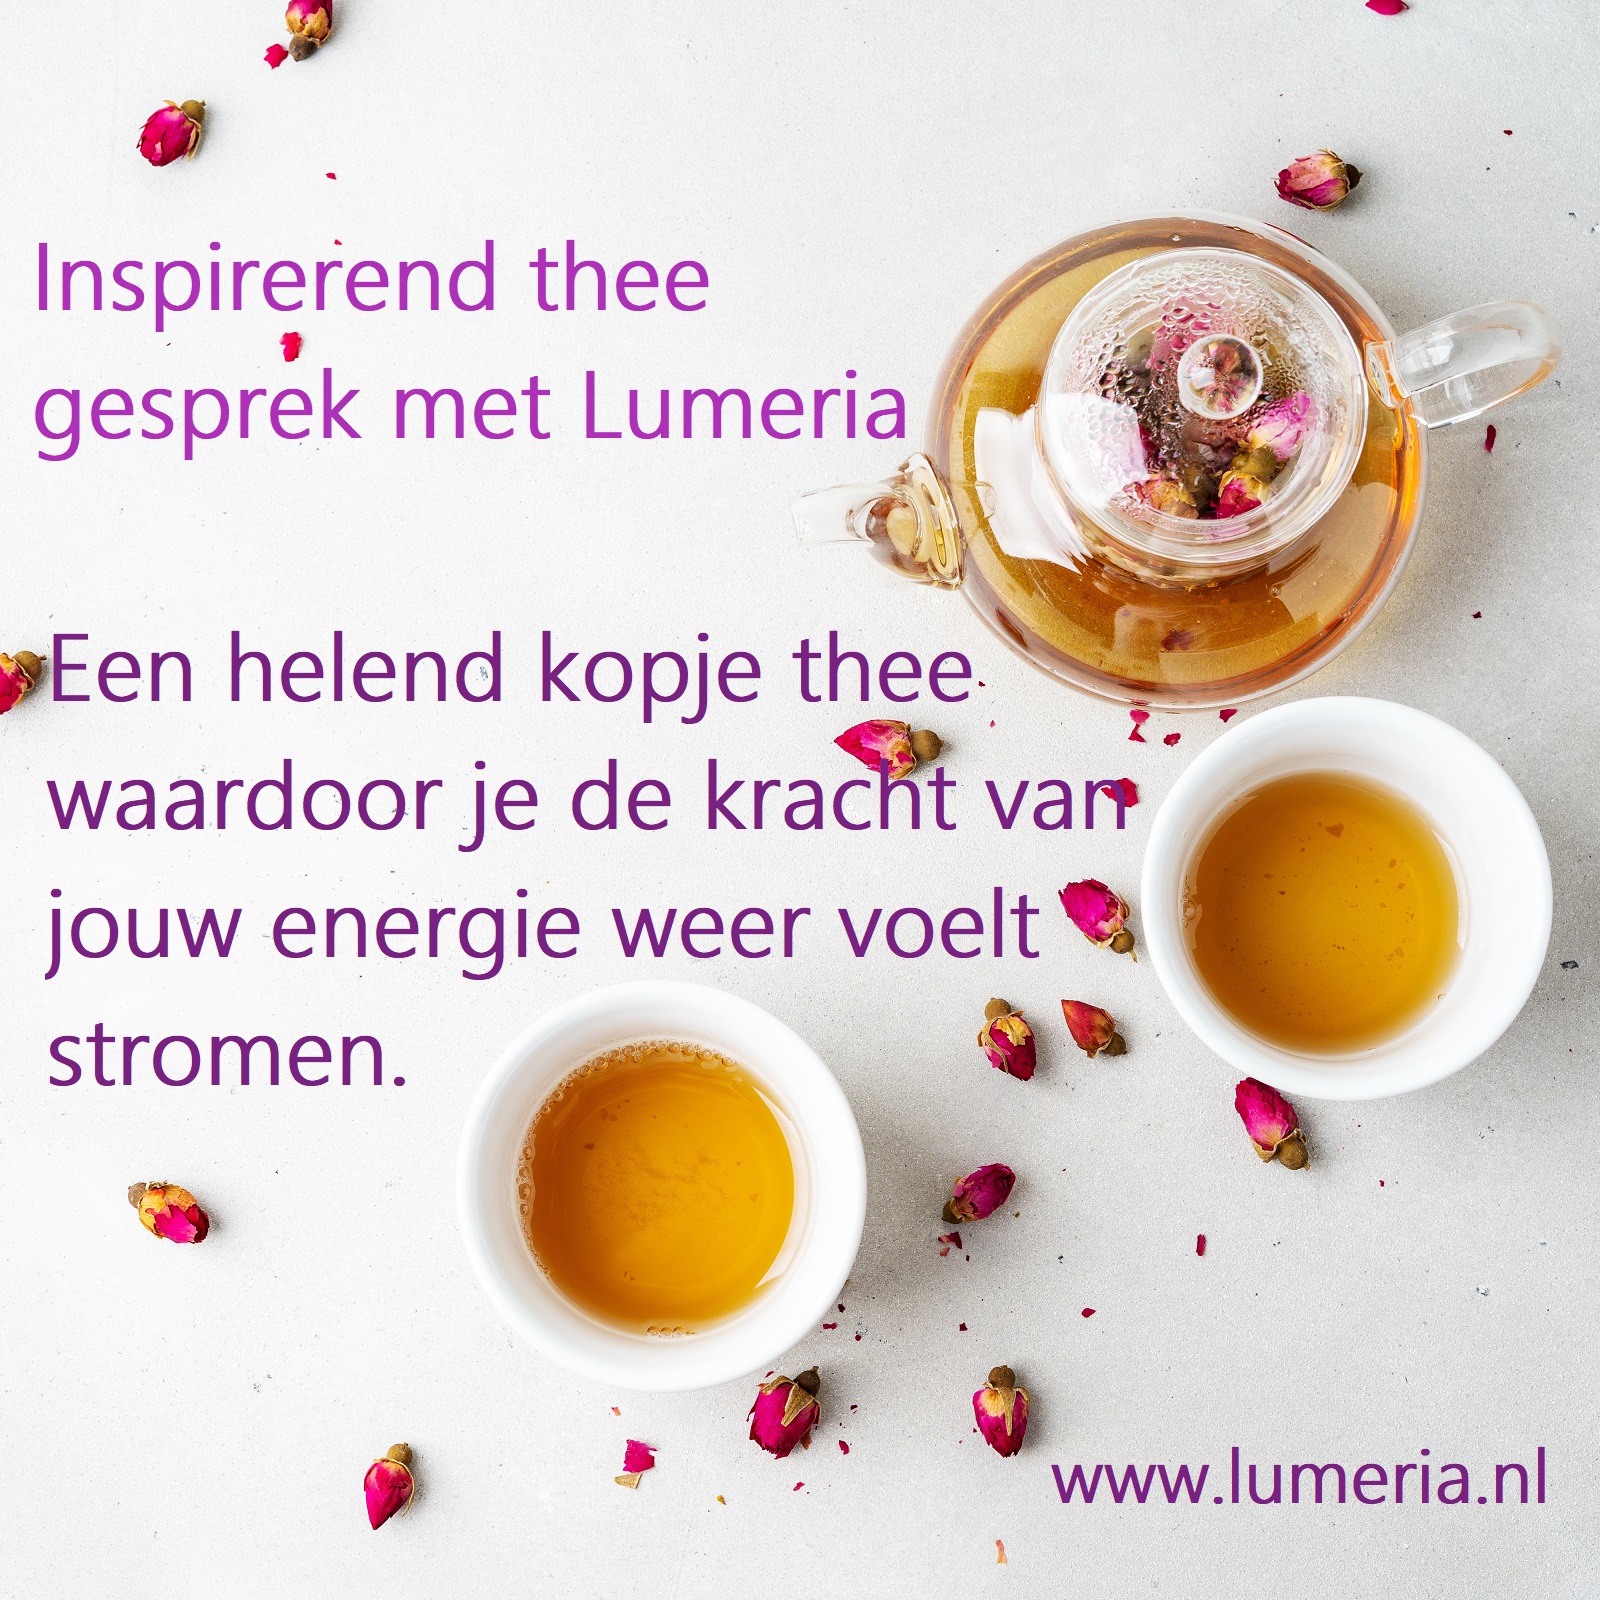 Inspirerend kopje thee - met Lumeria - Helend Opbeurend - Verhelderend Lumeriawinkel lifestyle decoratie &